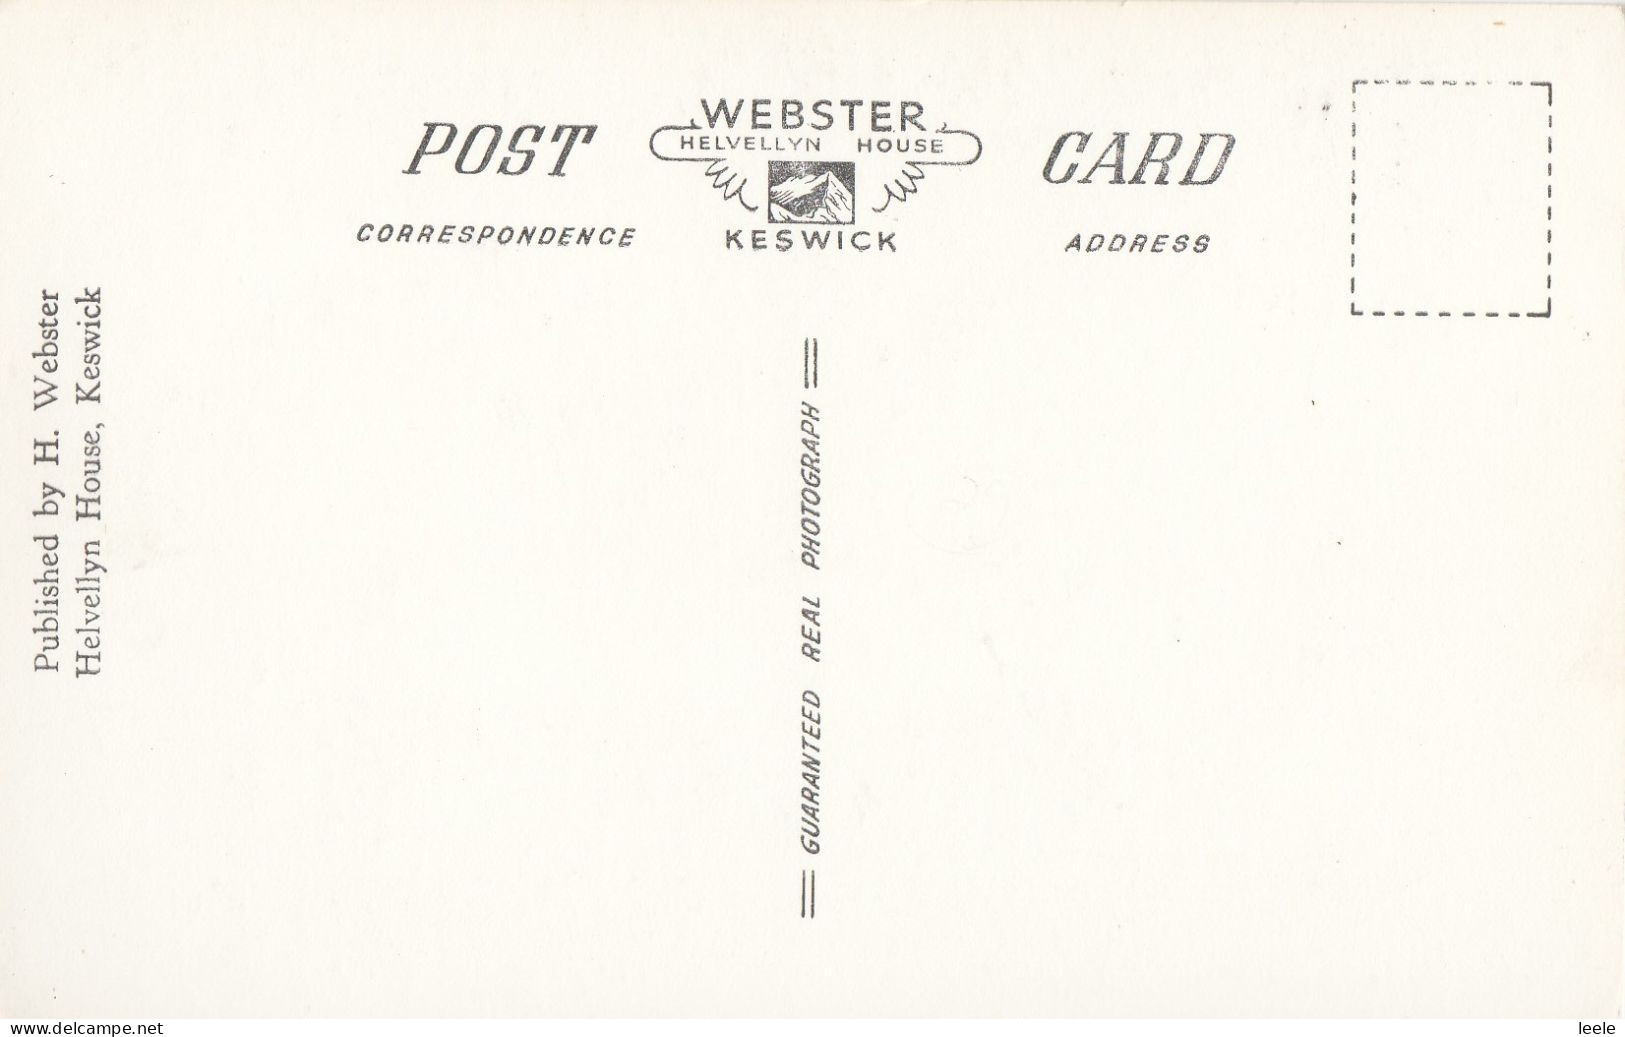 CJ10. Vintage Postcard. Wordsworth Grammar School, Hawkshead.Cumbria - Hawkshead